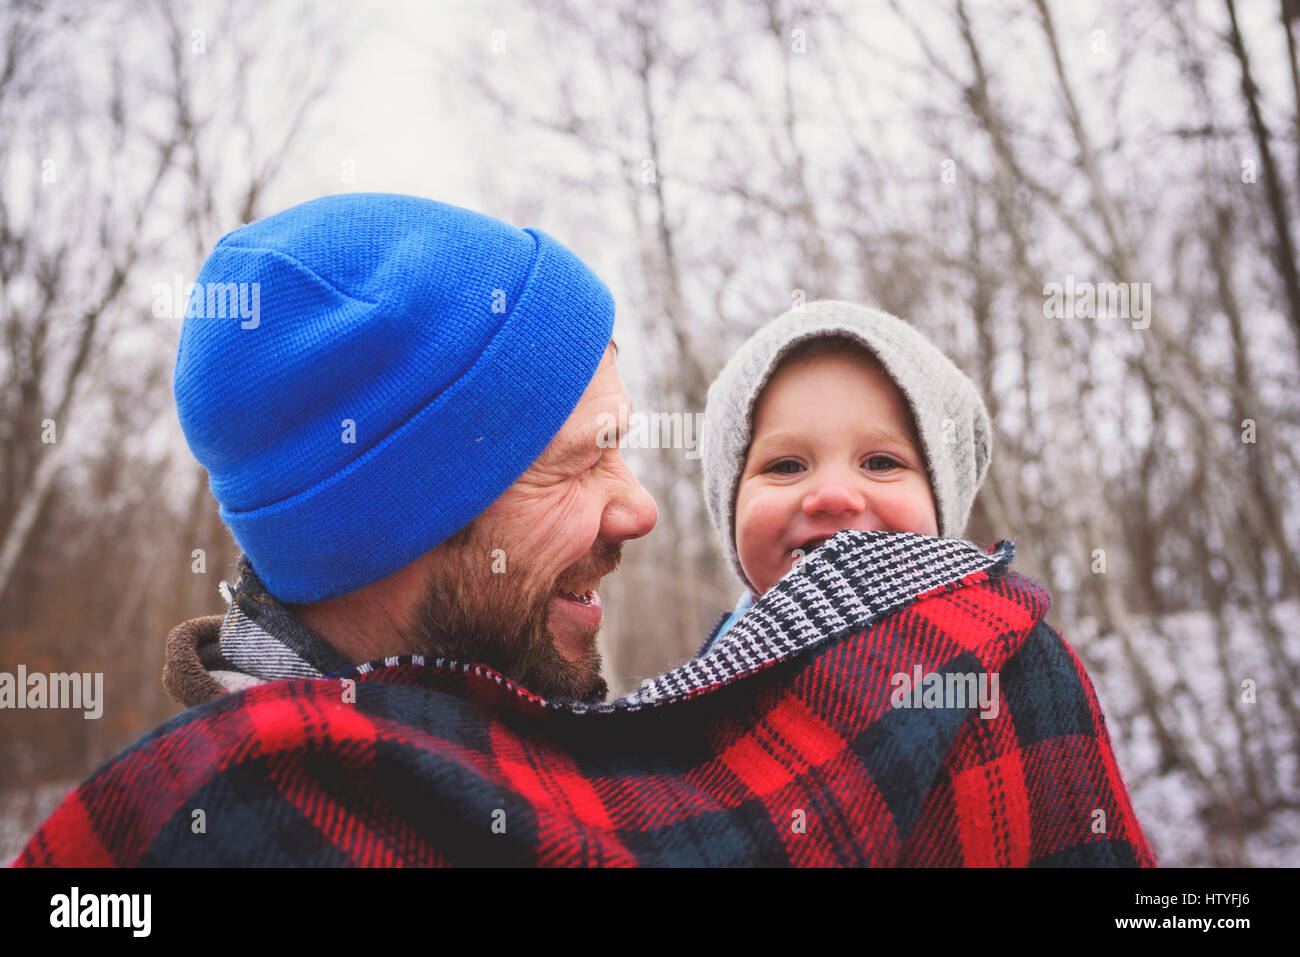 Porträt eines Vaters, der sein Kind in einem Winterwald in einer Decke gehüllt trägt Stockfoto